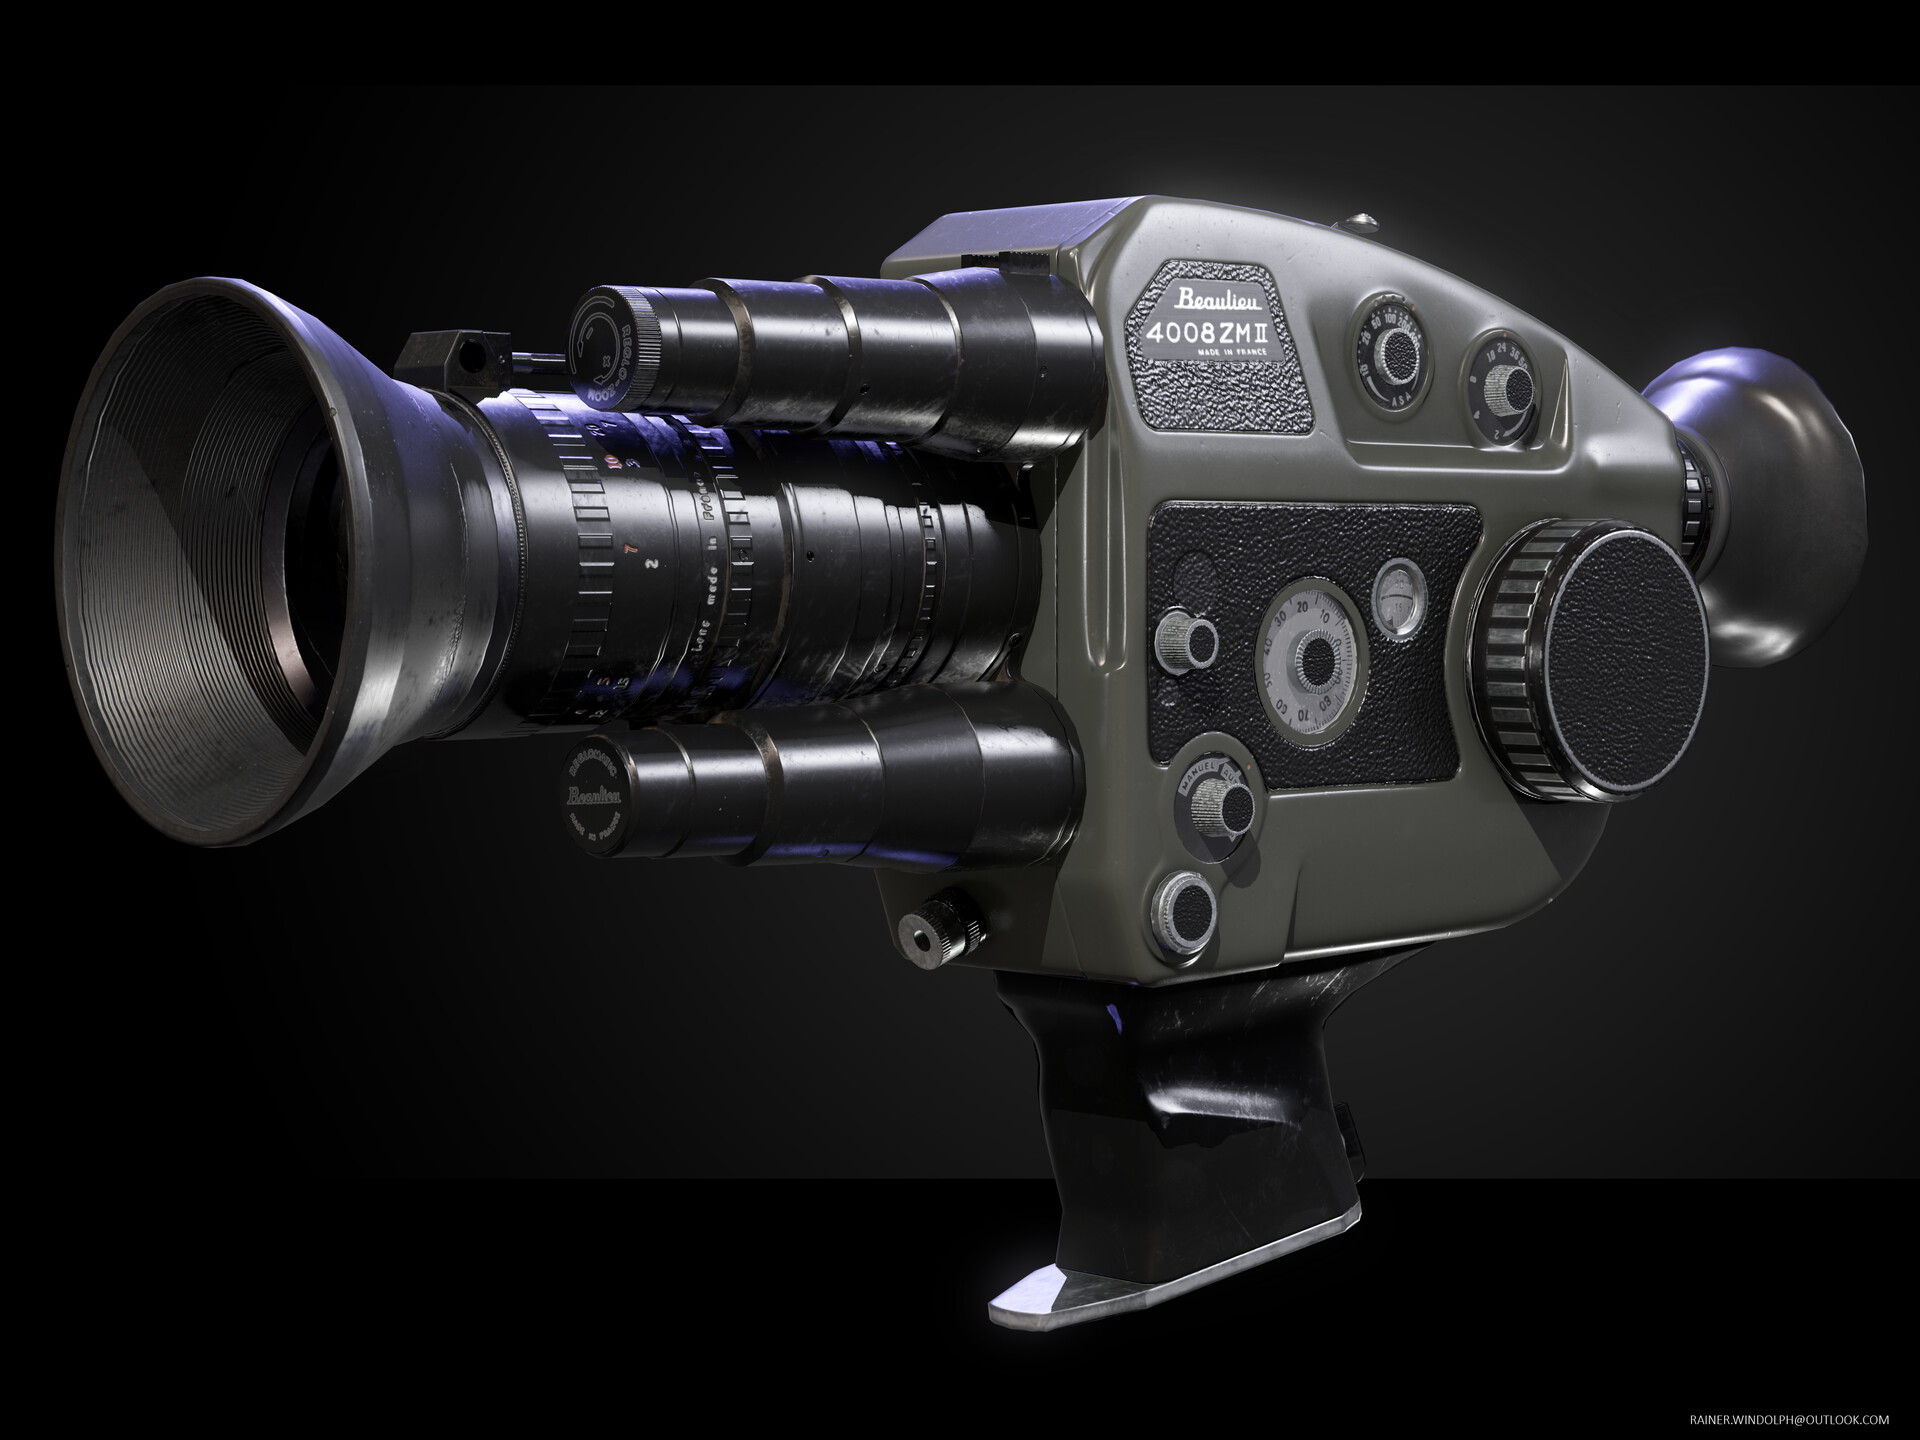 Beaulieu 4008 ZM II super 8 フィルムカメラ